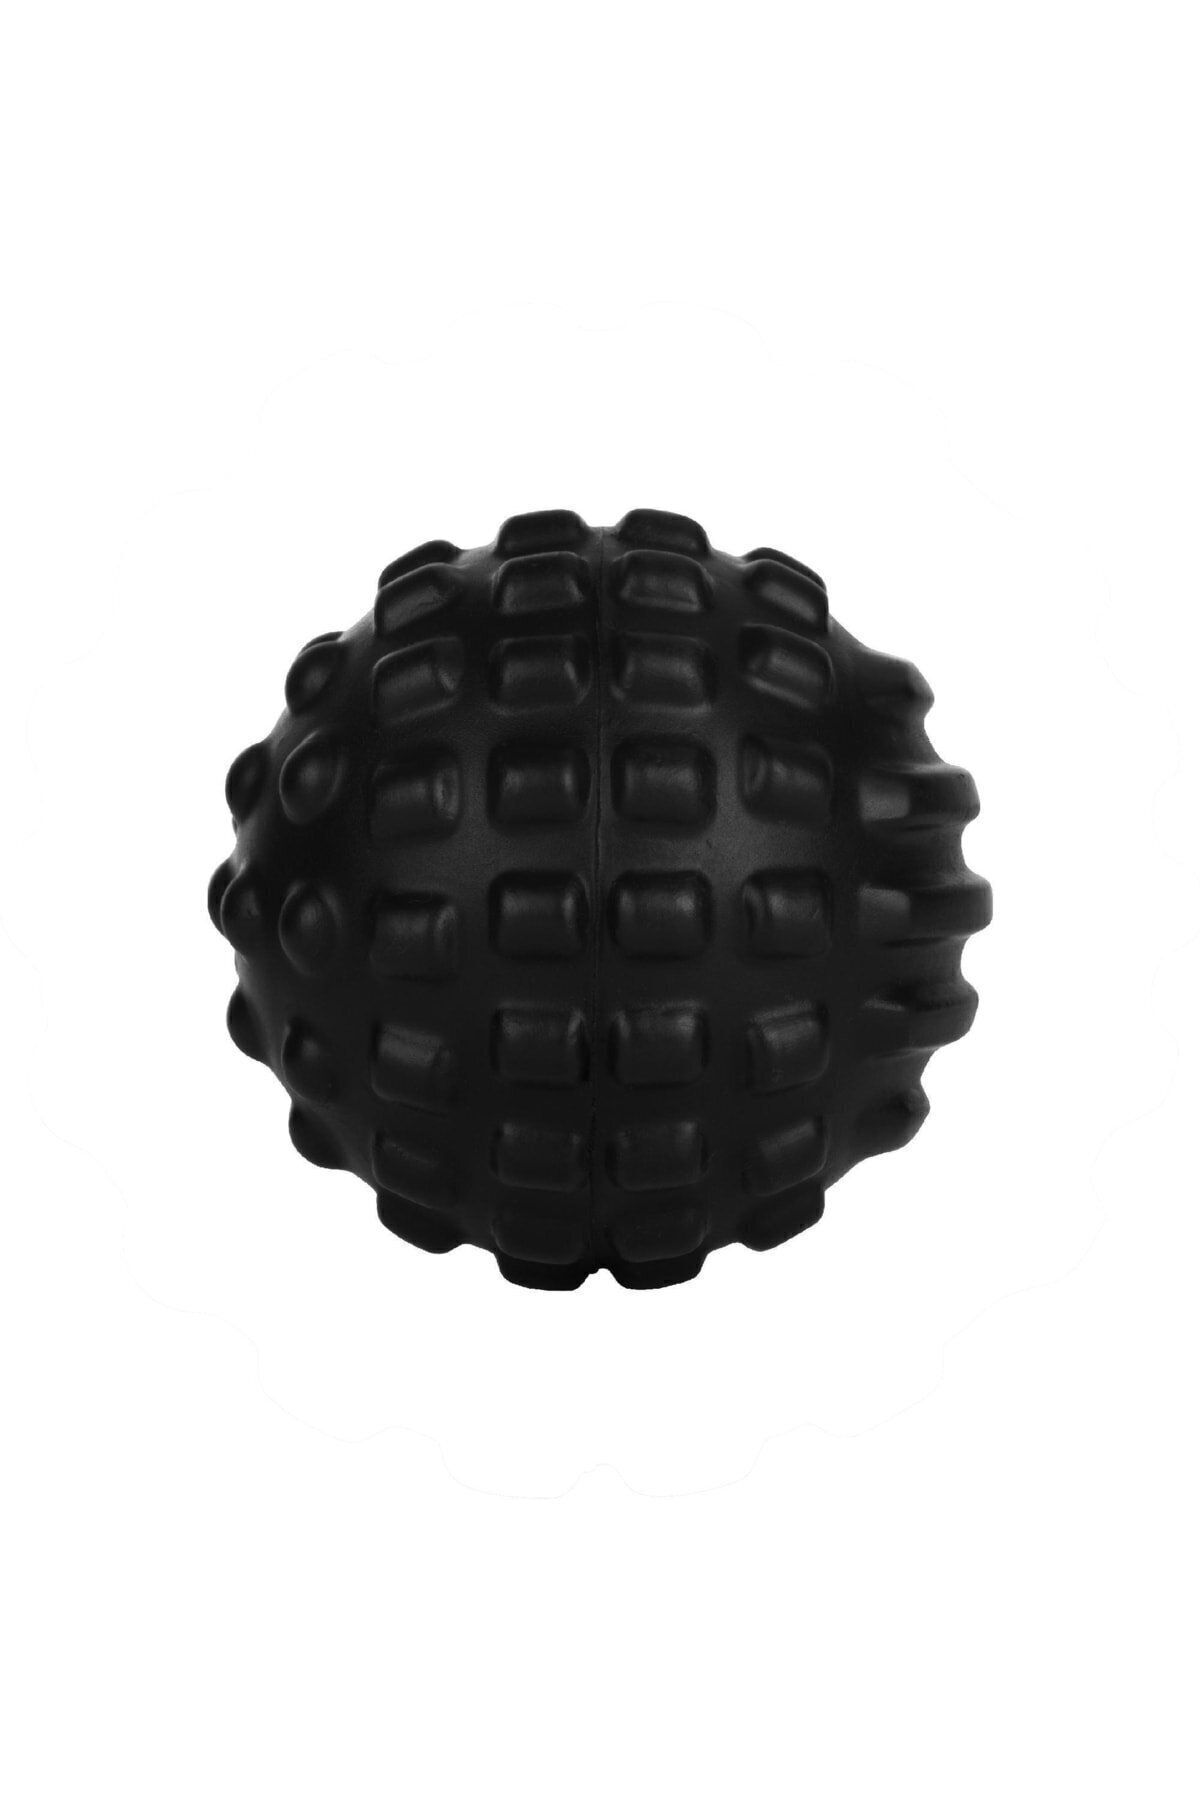 Decathlon Aptonia Маленький массажный мяч — черный — 500 174699